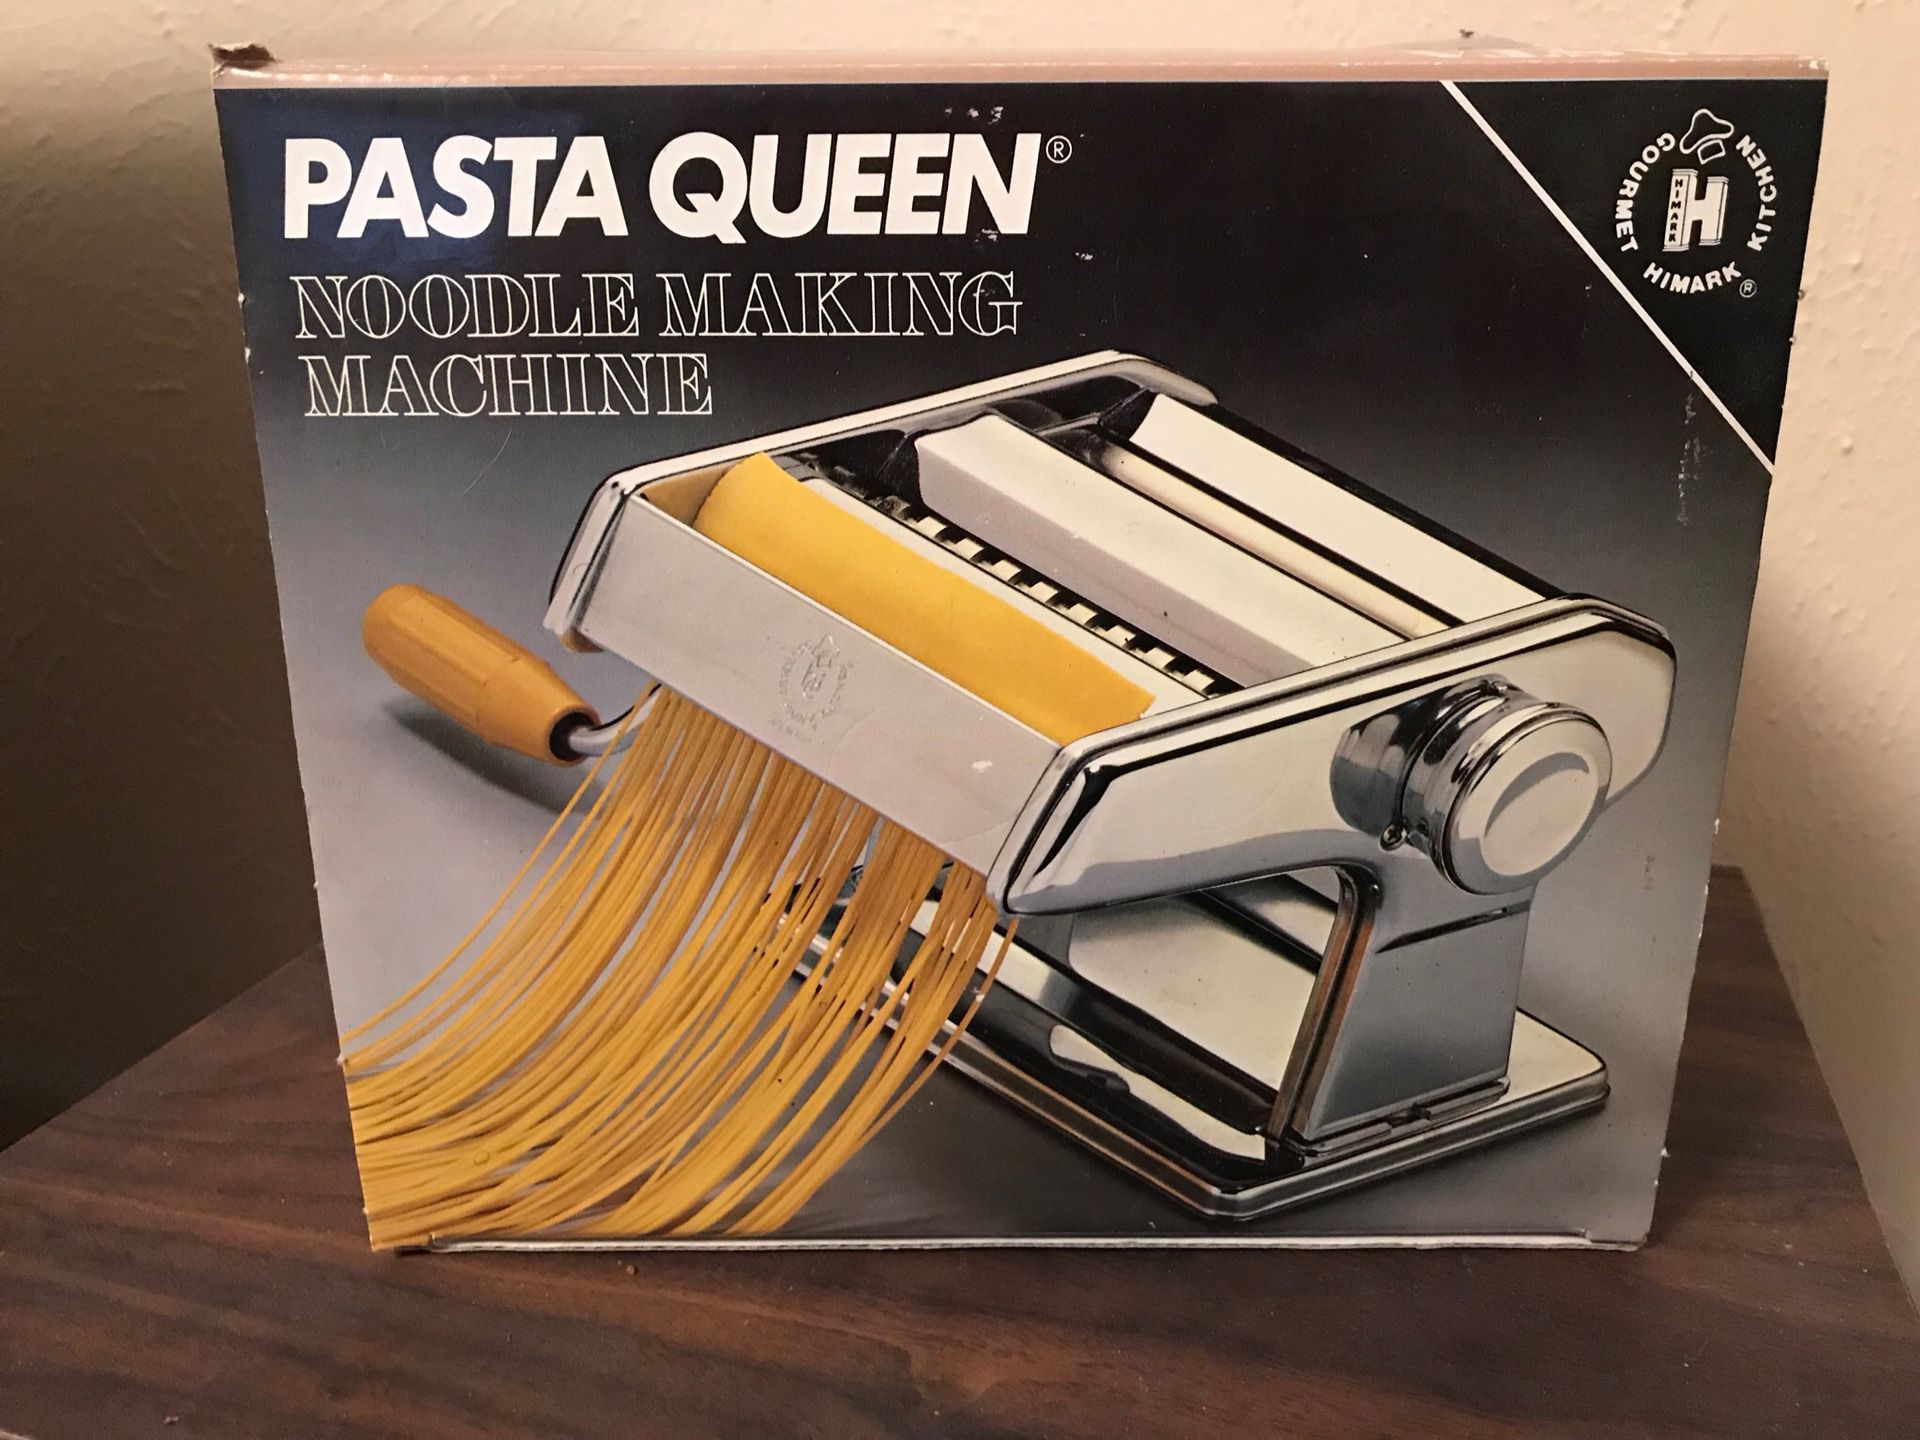 Himark Kitchen Gourmet Pasta Queen Noodle Making Machine 15-4150